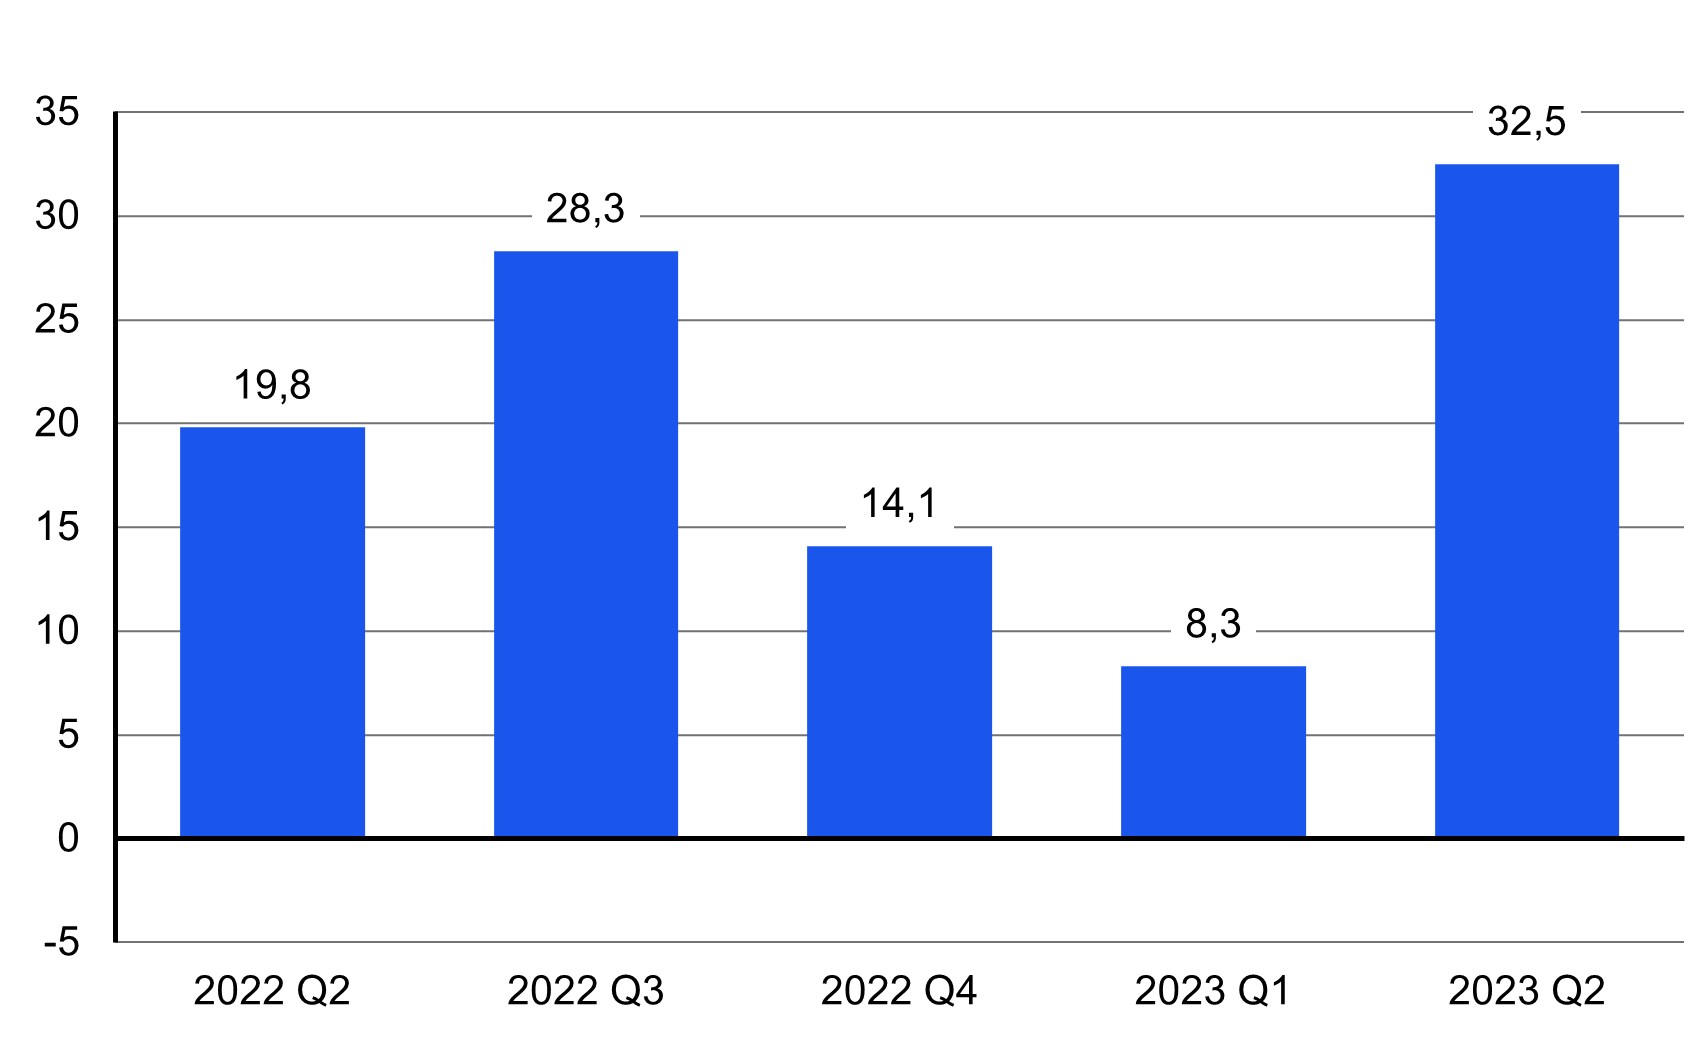 Yritysten investointien vuosimuutos vuosineljänneksittäin 2022 Q2 – 2023 Q2: yritysten tekemät investoinnit kasvoivat vuoden 2023 toisella neljänneksellä 32,5 prosenttia vuodentakaiseen verrattuna.